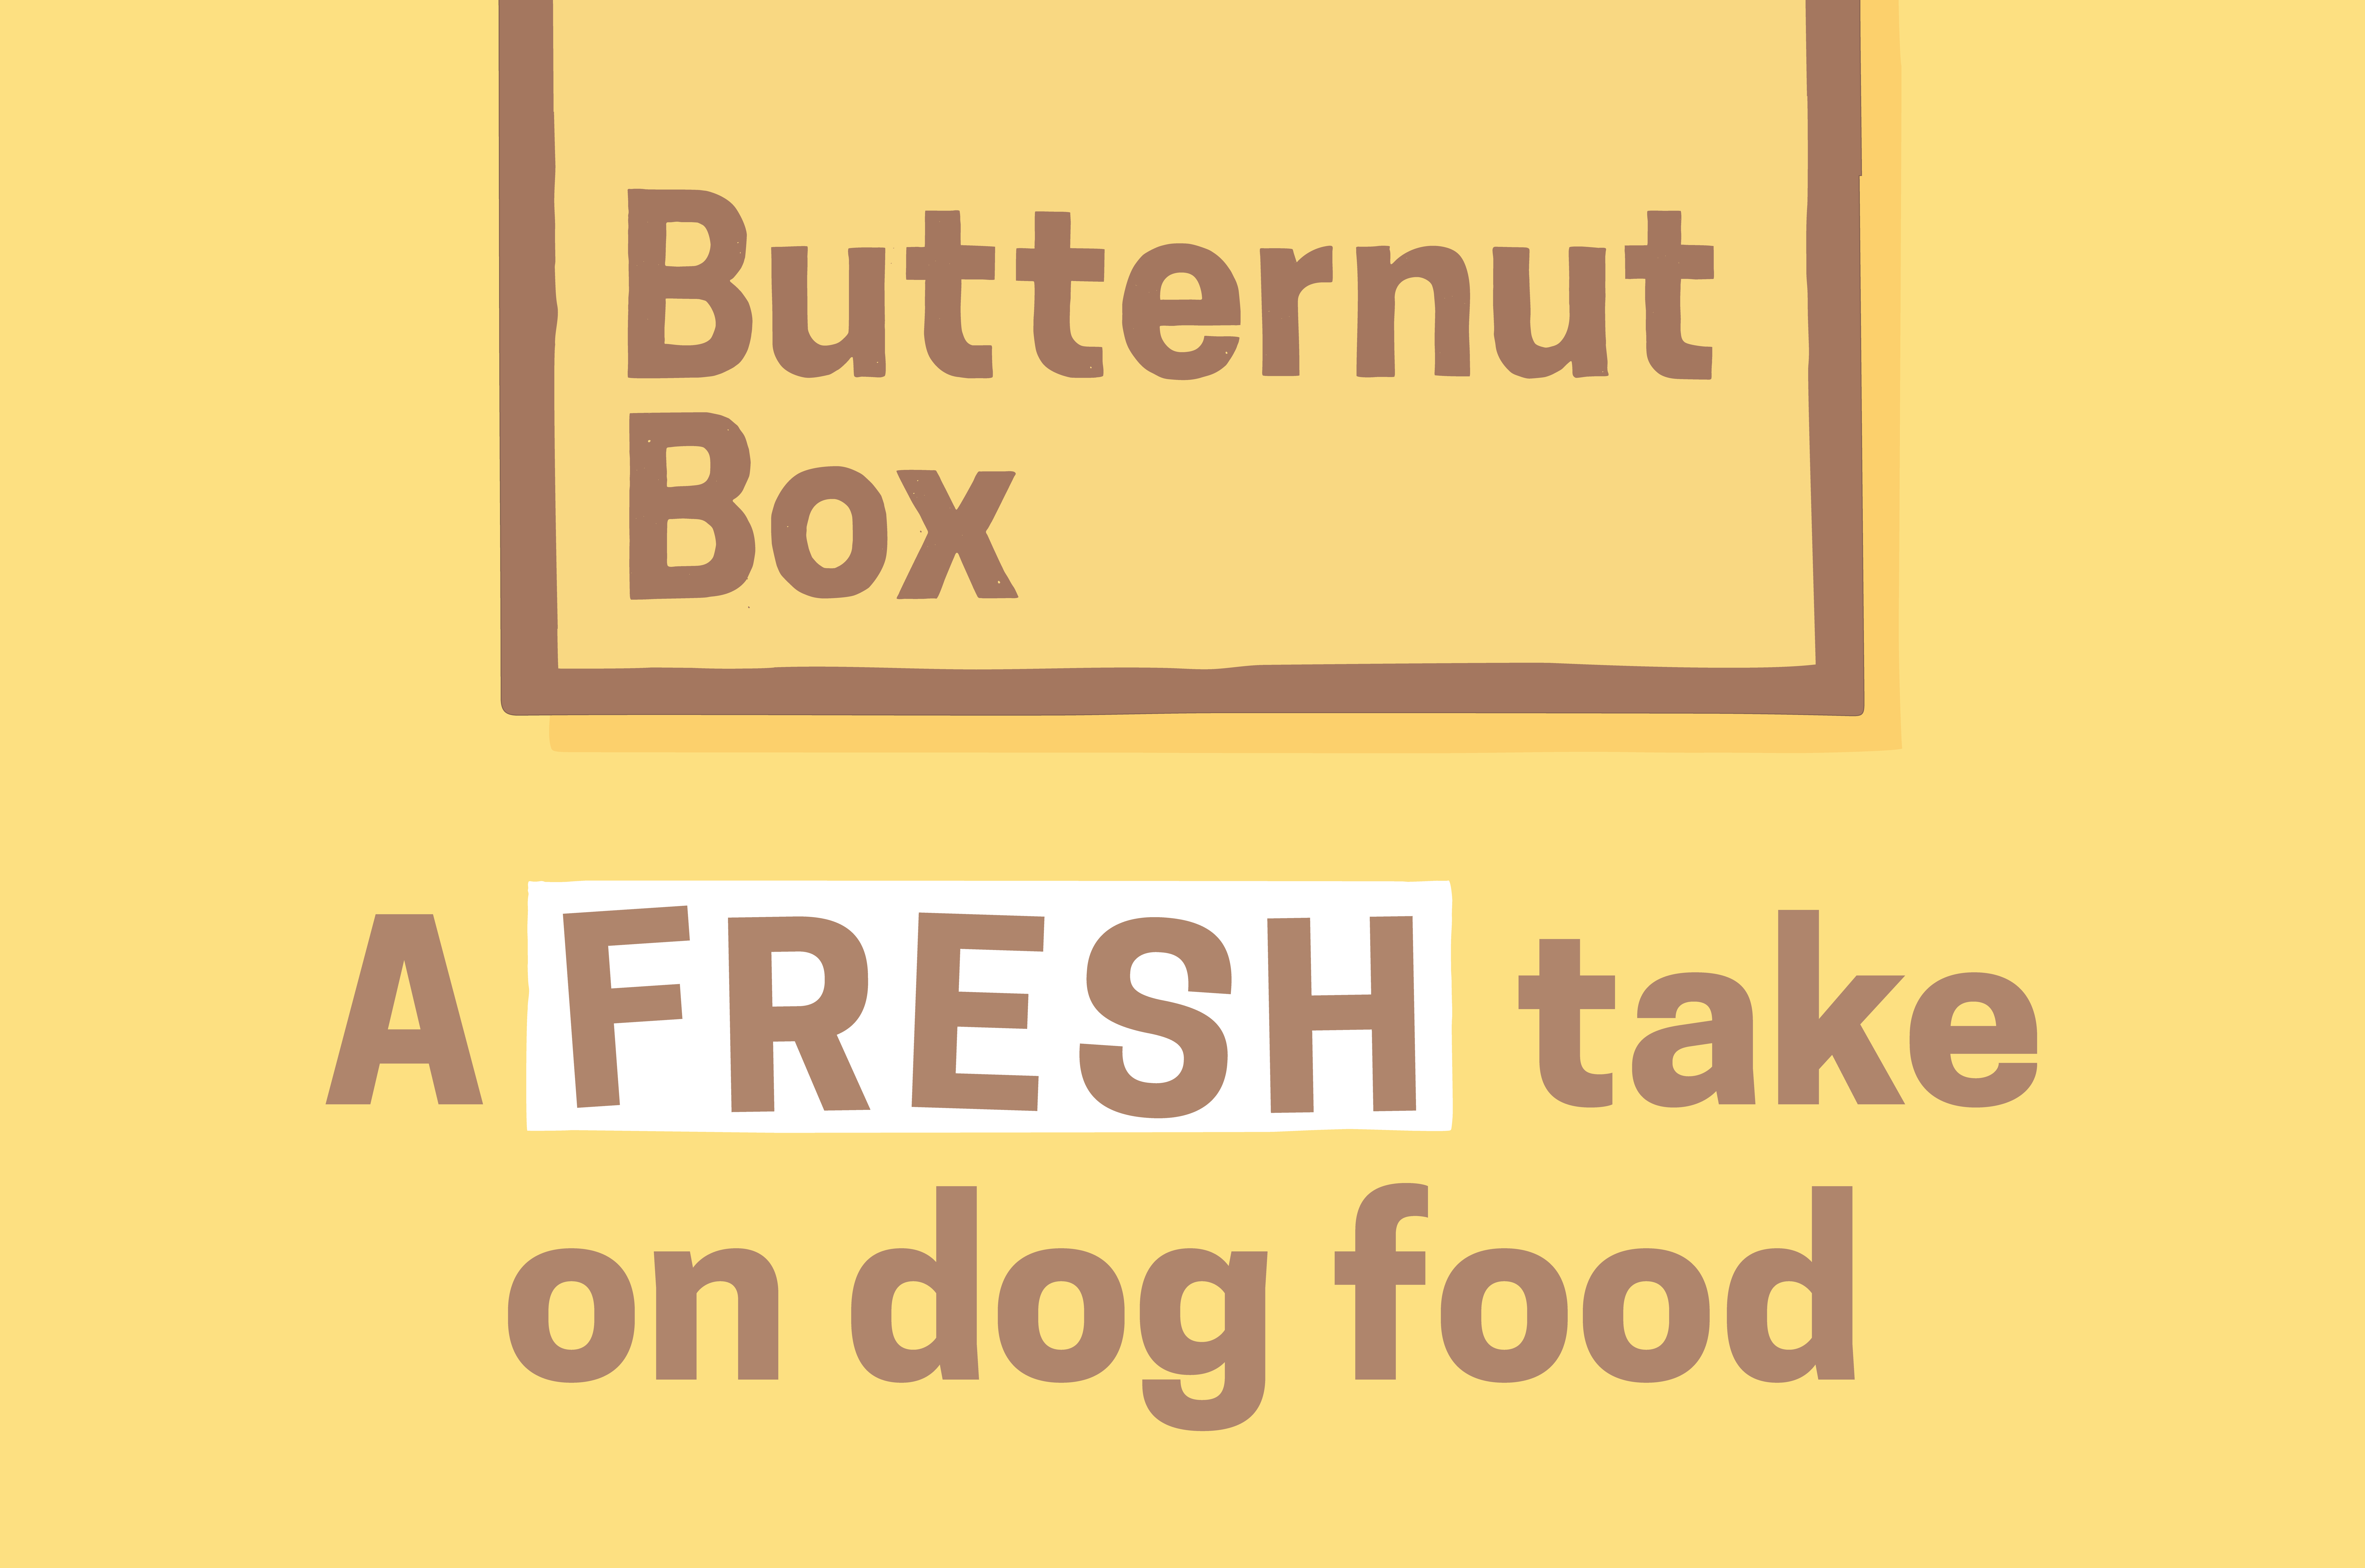 Butternut box